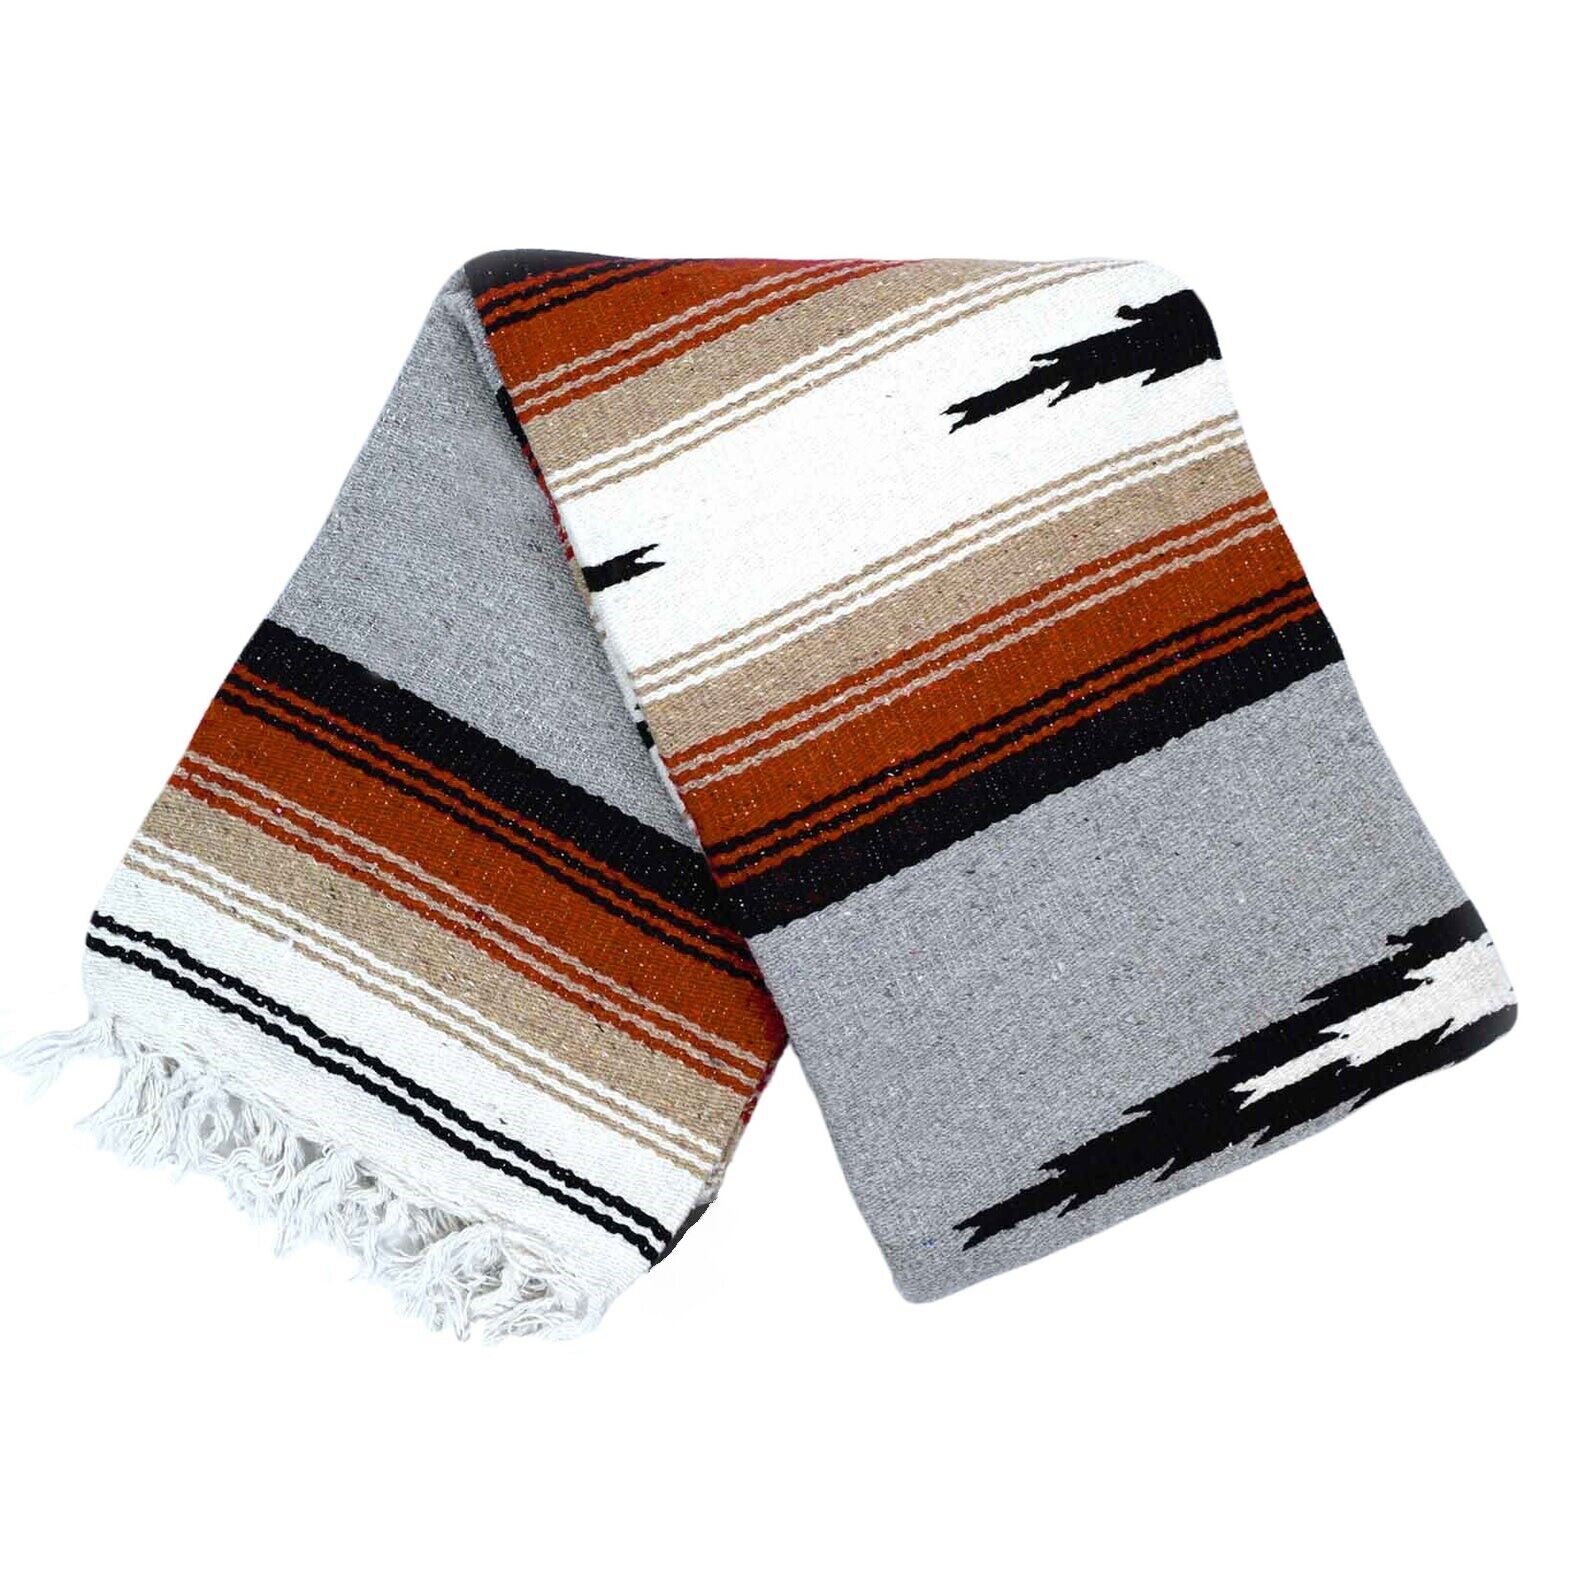 Mexican Yoga Blanket Grey Diamond Stripes White Tan Gray Serape Falsa Throw XL